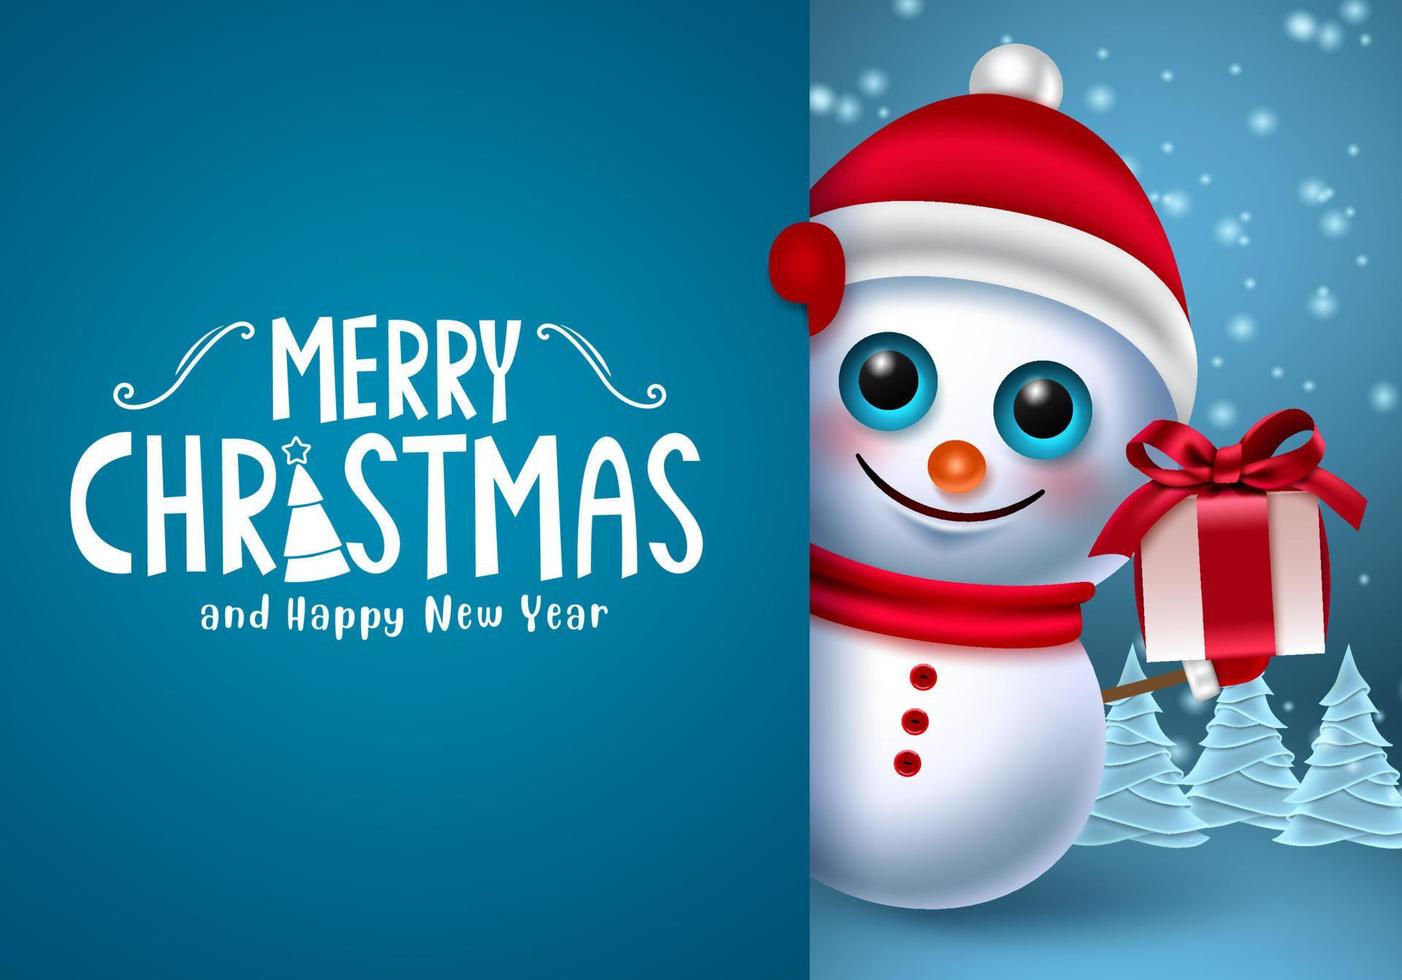 kerst sneeuwpop karakter vector sjabloon. vrolijke kersttekst in blauwe ruimte voor berichten met sneeuwman karakter met cadeau voor xmas wenskaart ontwerp. vectorillustratie.